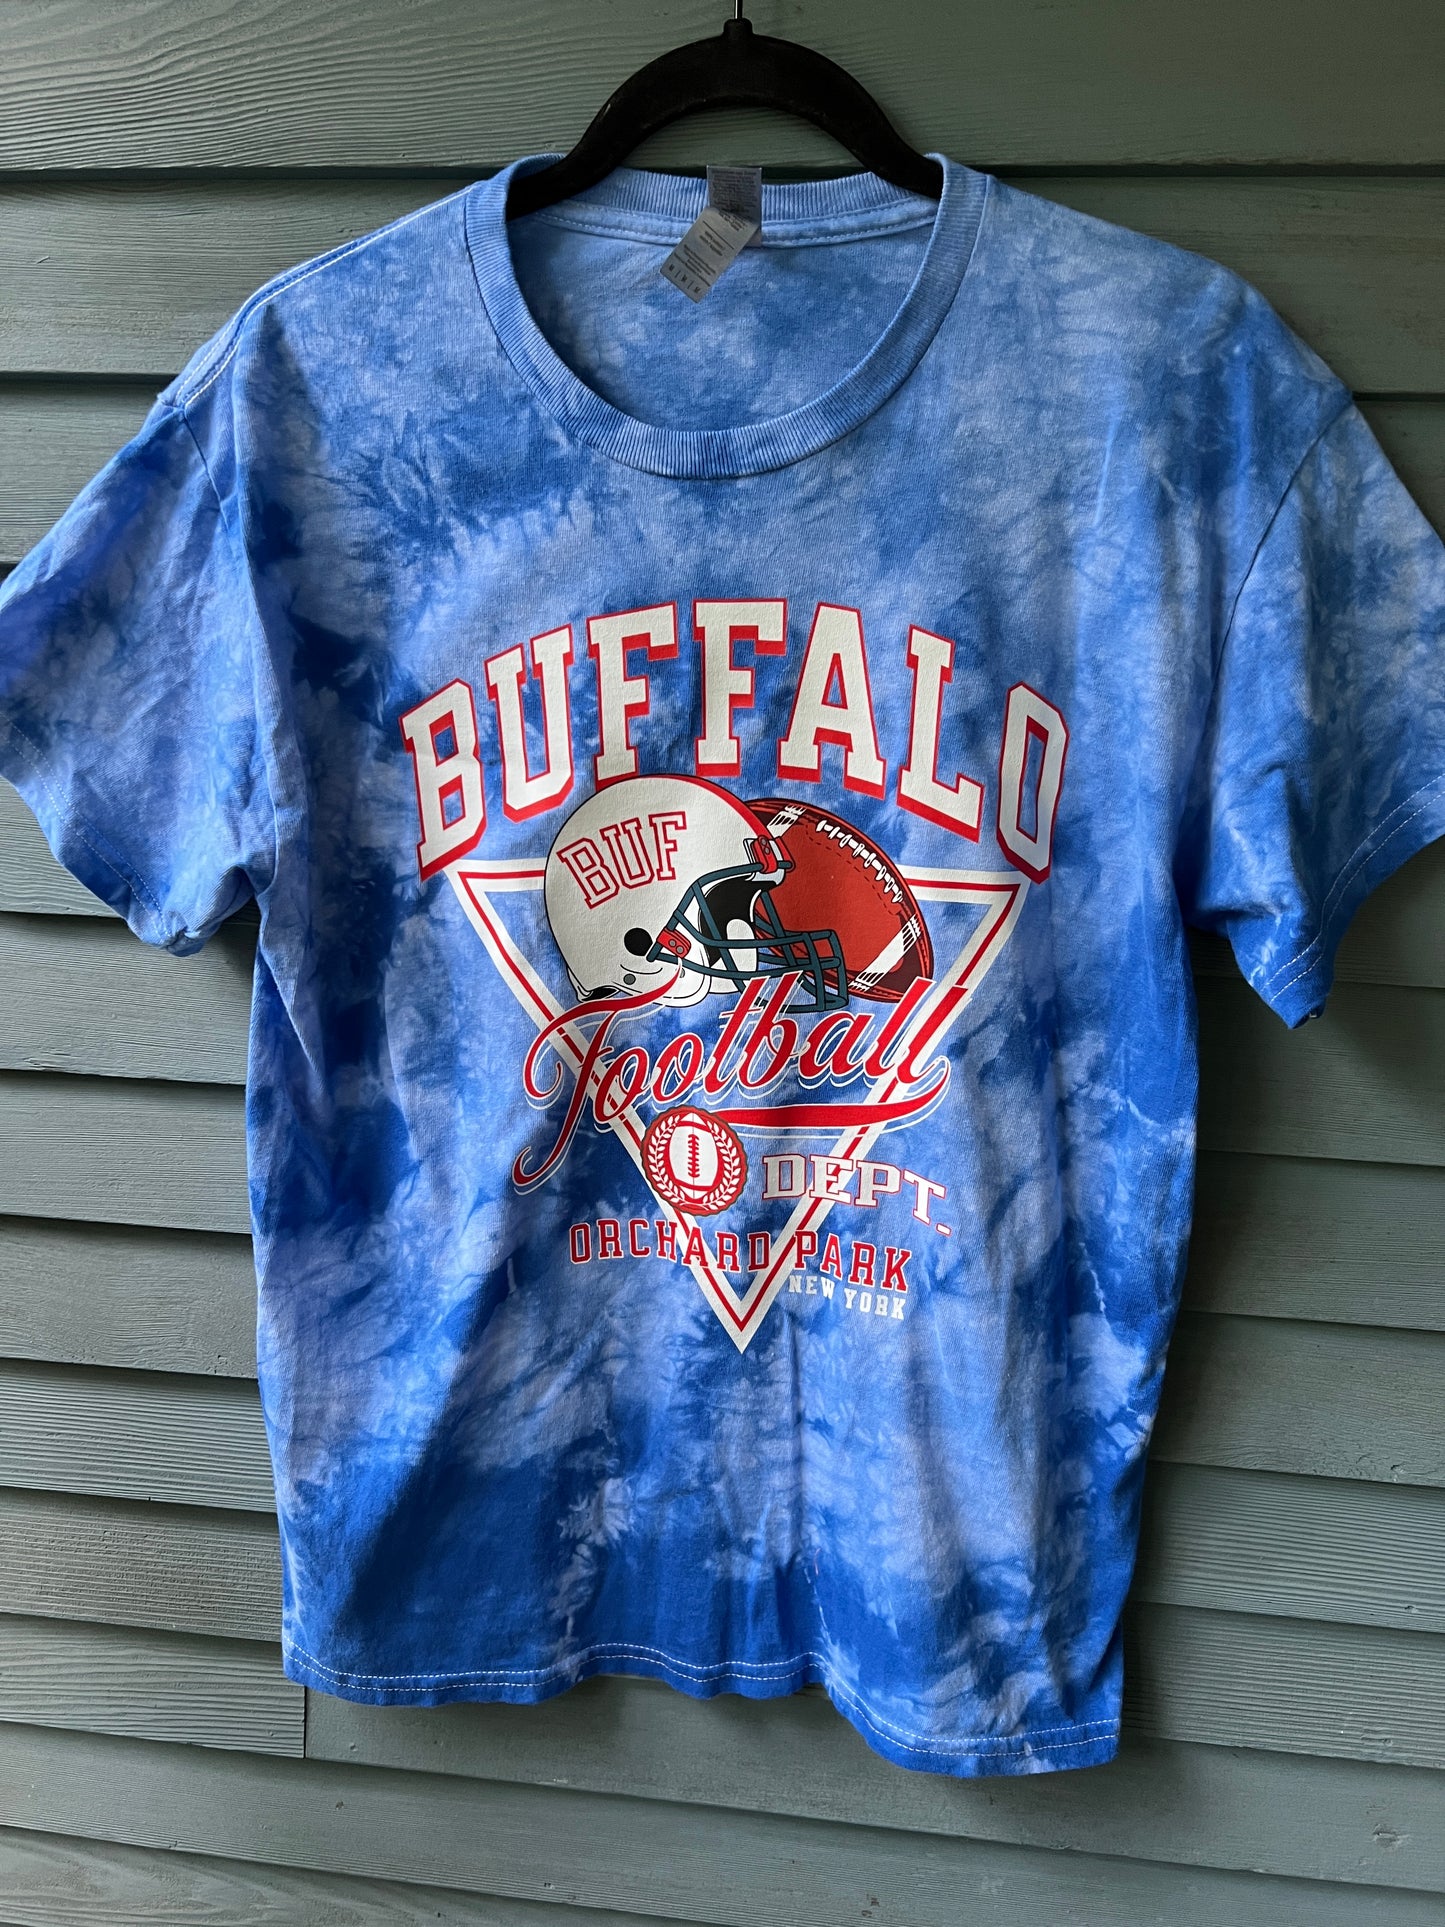 Buffalo football old school crewneck, Buffalo football t-shirt, Buffalo Football Dept retro inspired